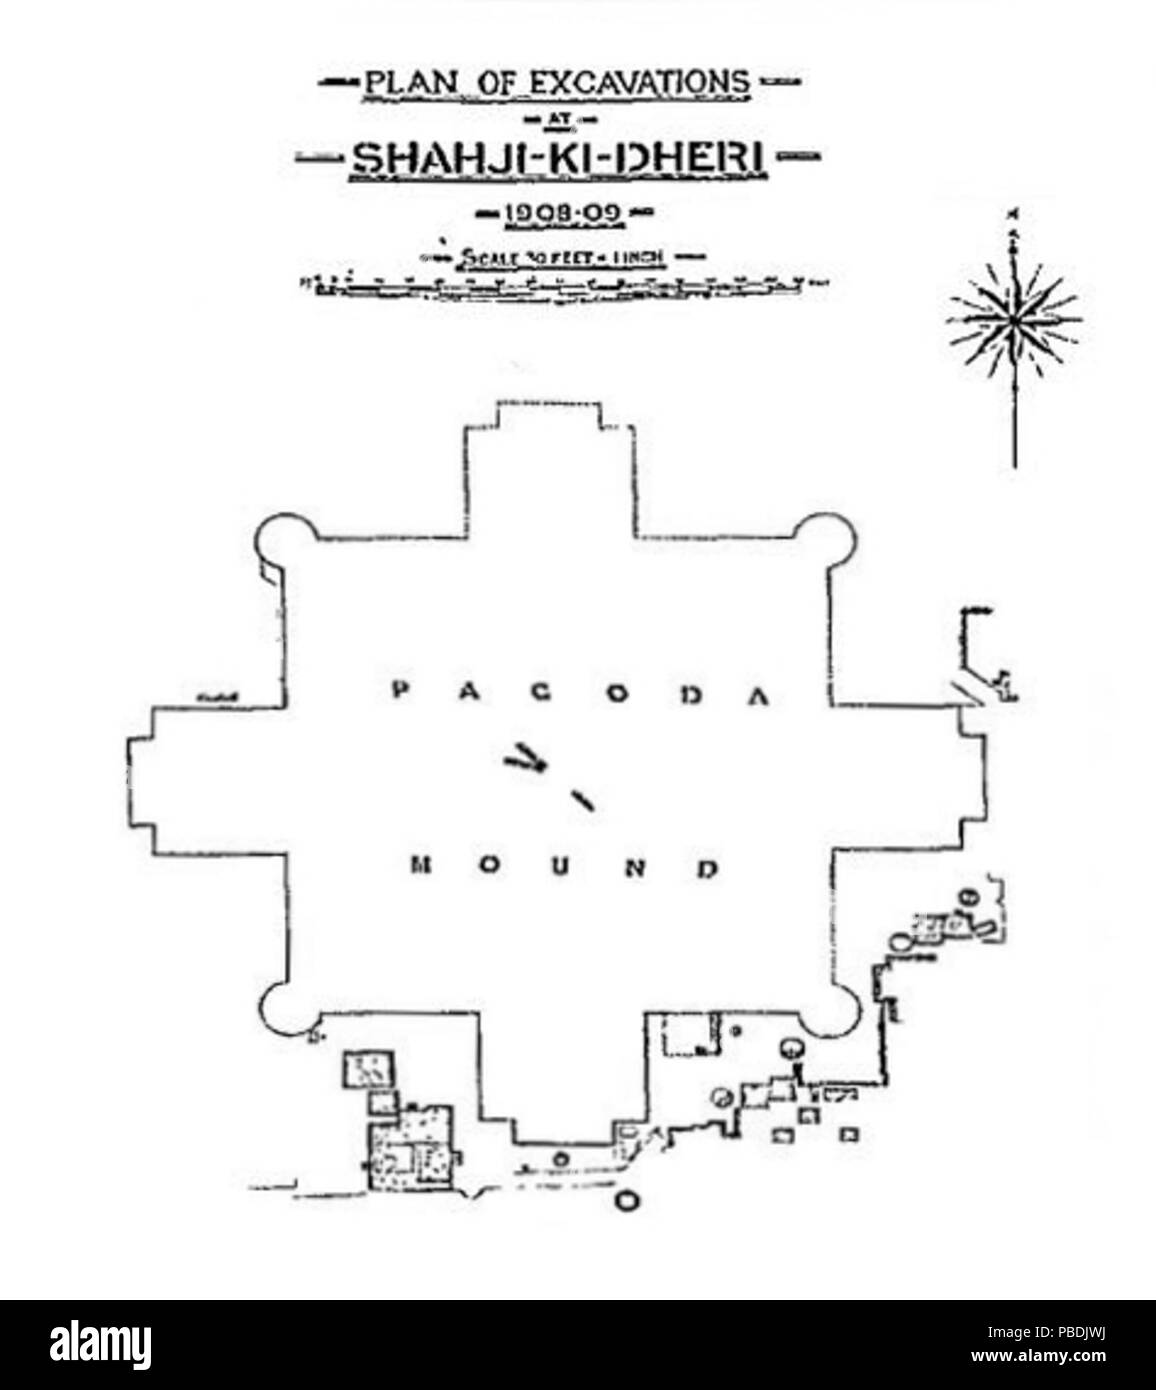 1311 Shah-ji-ki-Dheri stupa plan Foto Stock